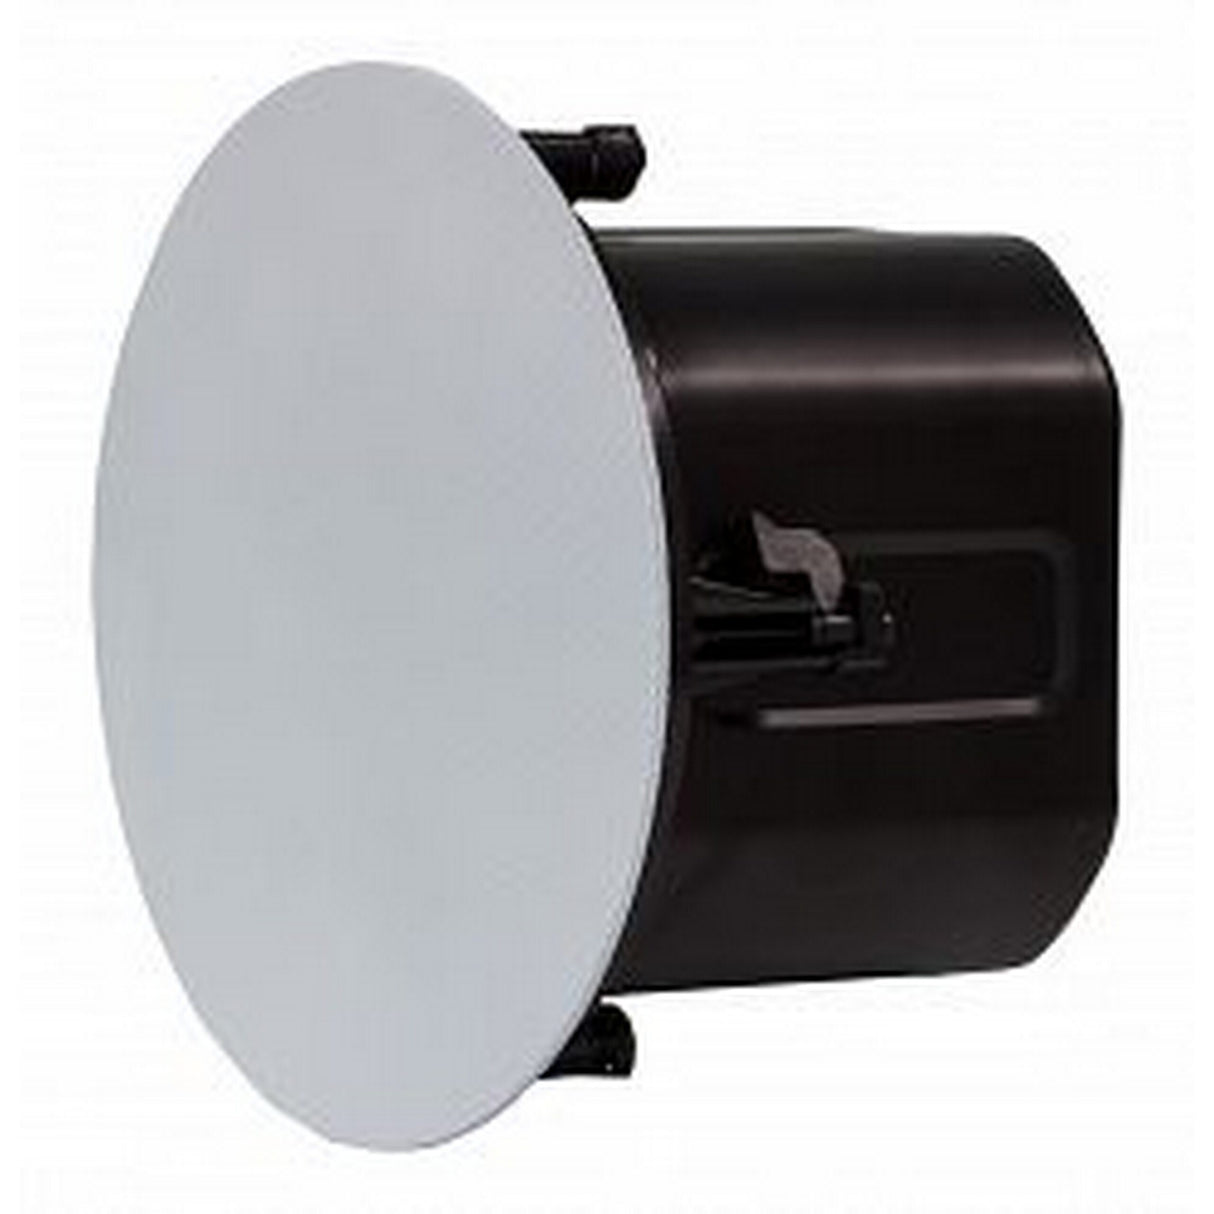 MuxLab 500221 Dante Ceiling Speaker PoE, 40 Watts